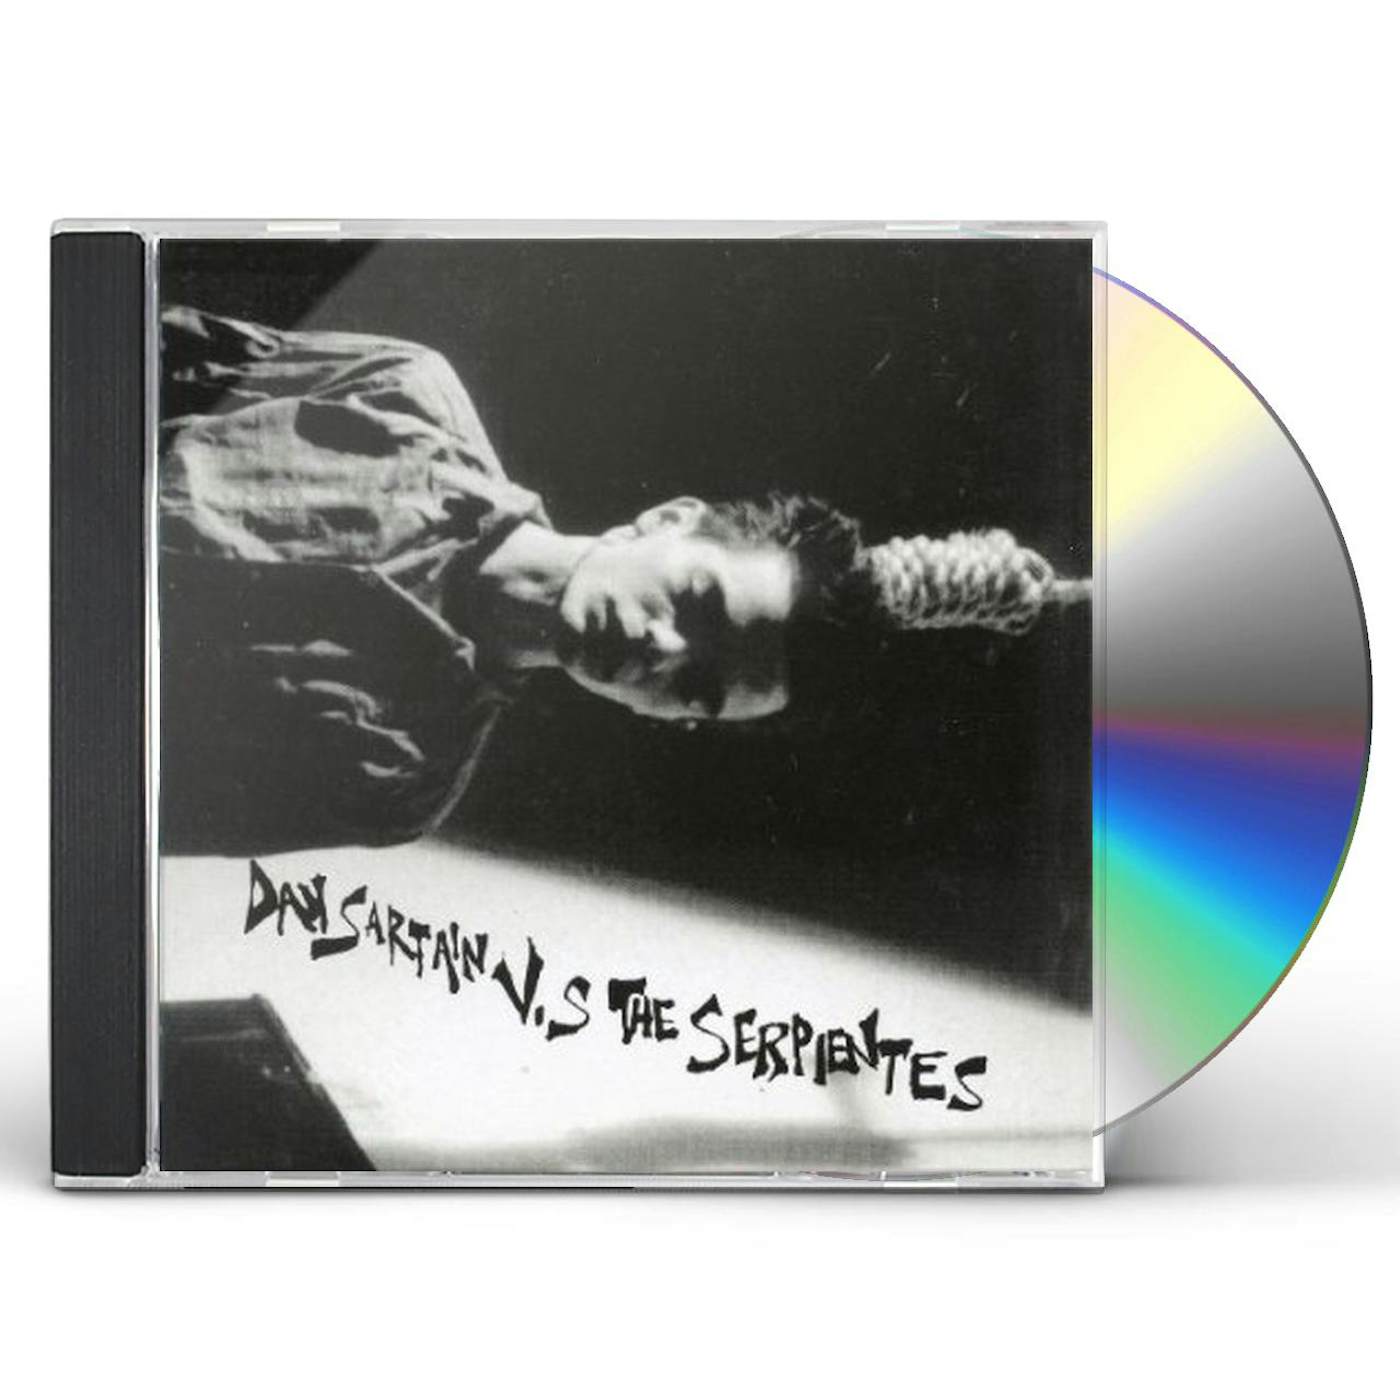 DAN SARTAIN VS THE SERPIENTES CD